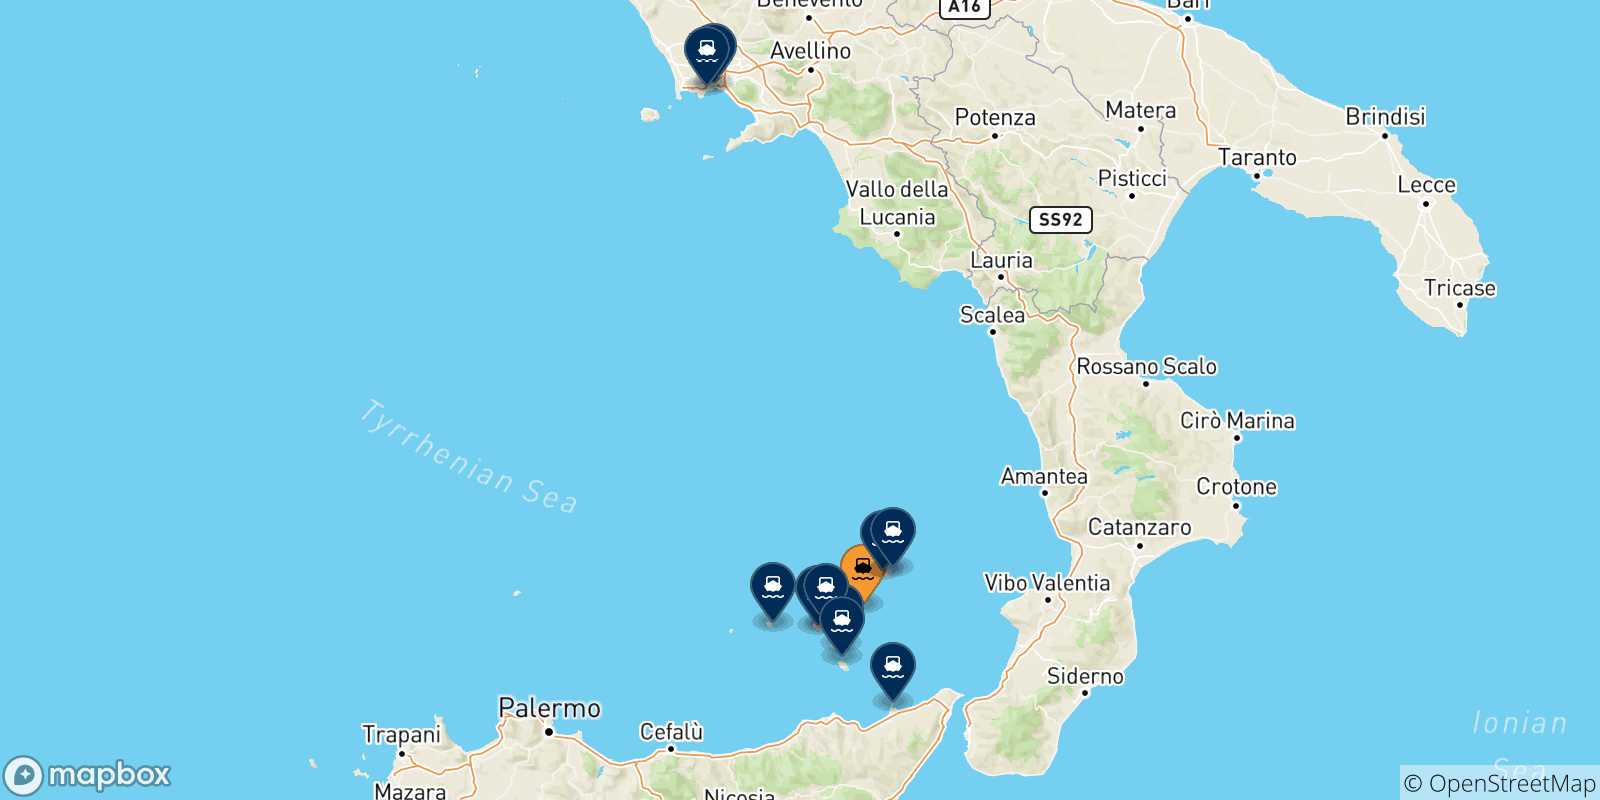 Mappa delle possibili rotte tra Panarea e l'Italia